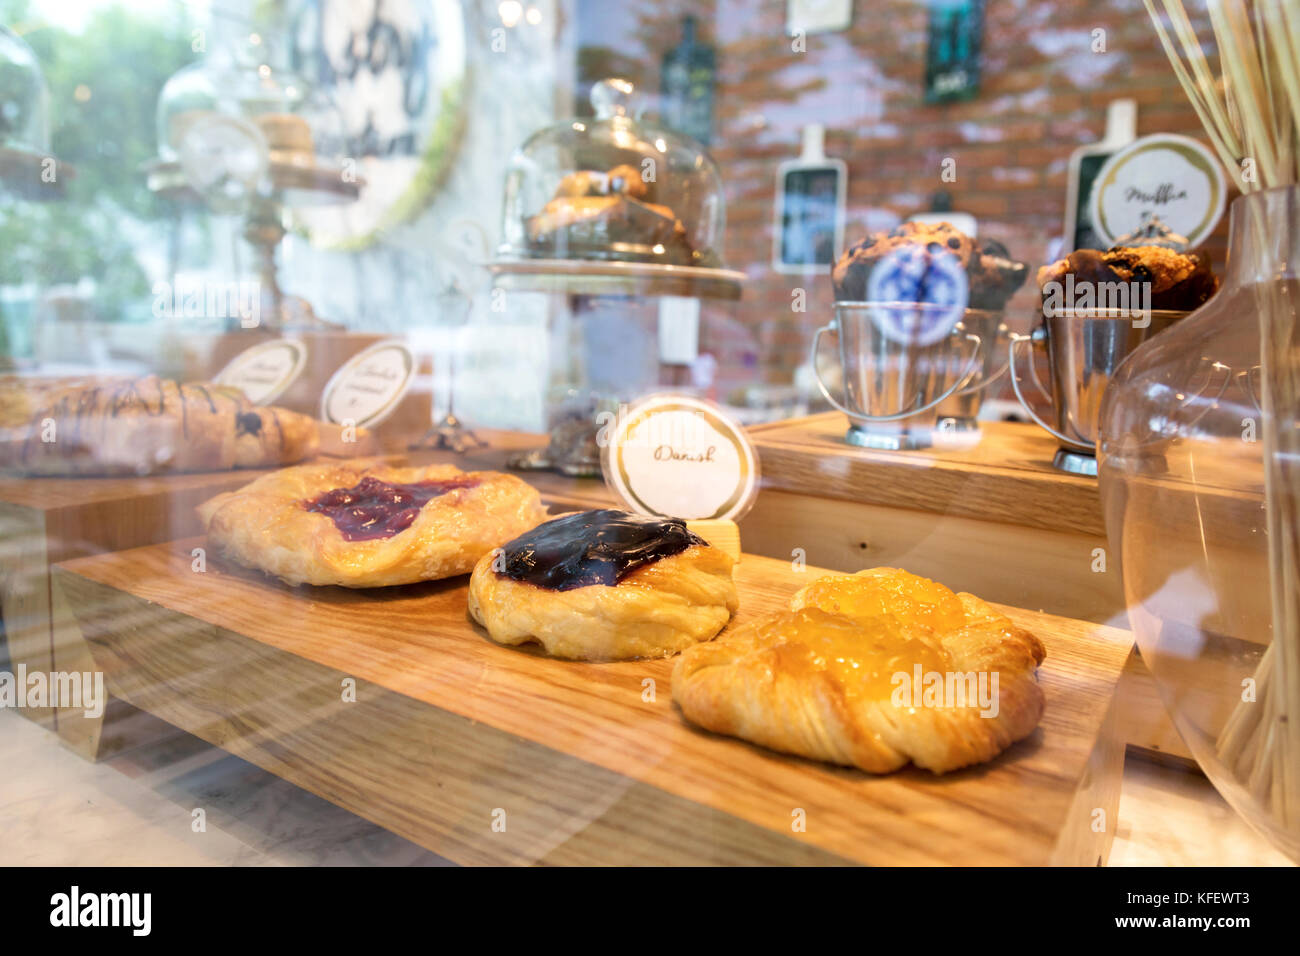 Myrtille, fraise et pêche dans les pâtisseries danoises s'affichent avec la réflexion de la lumière sur la vitre au bakery shop. focus sélectif. Banque D'Images